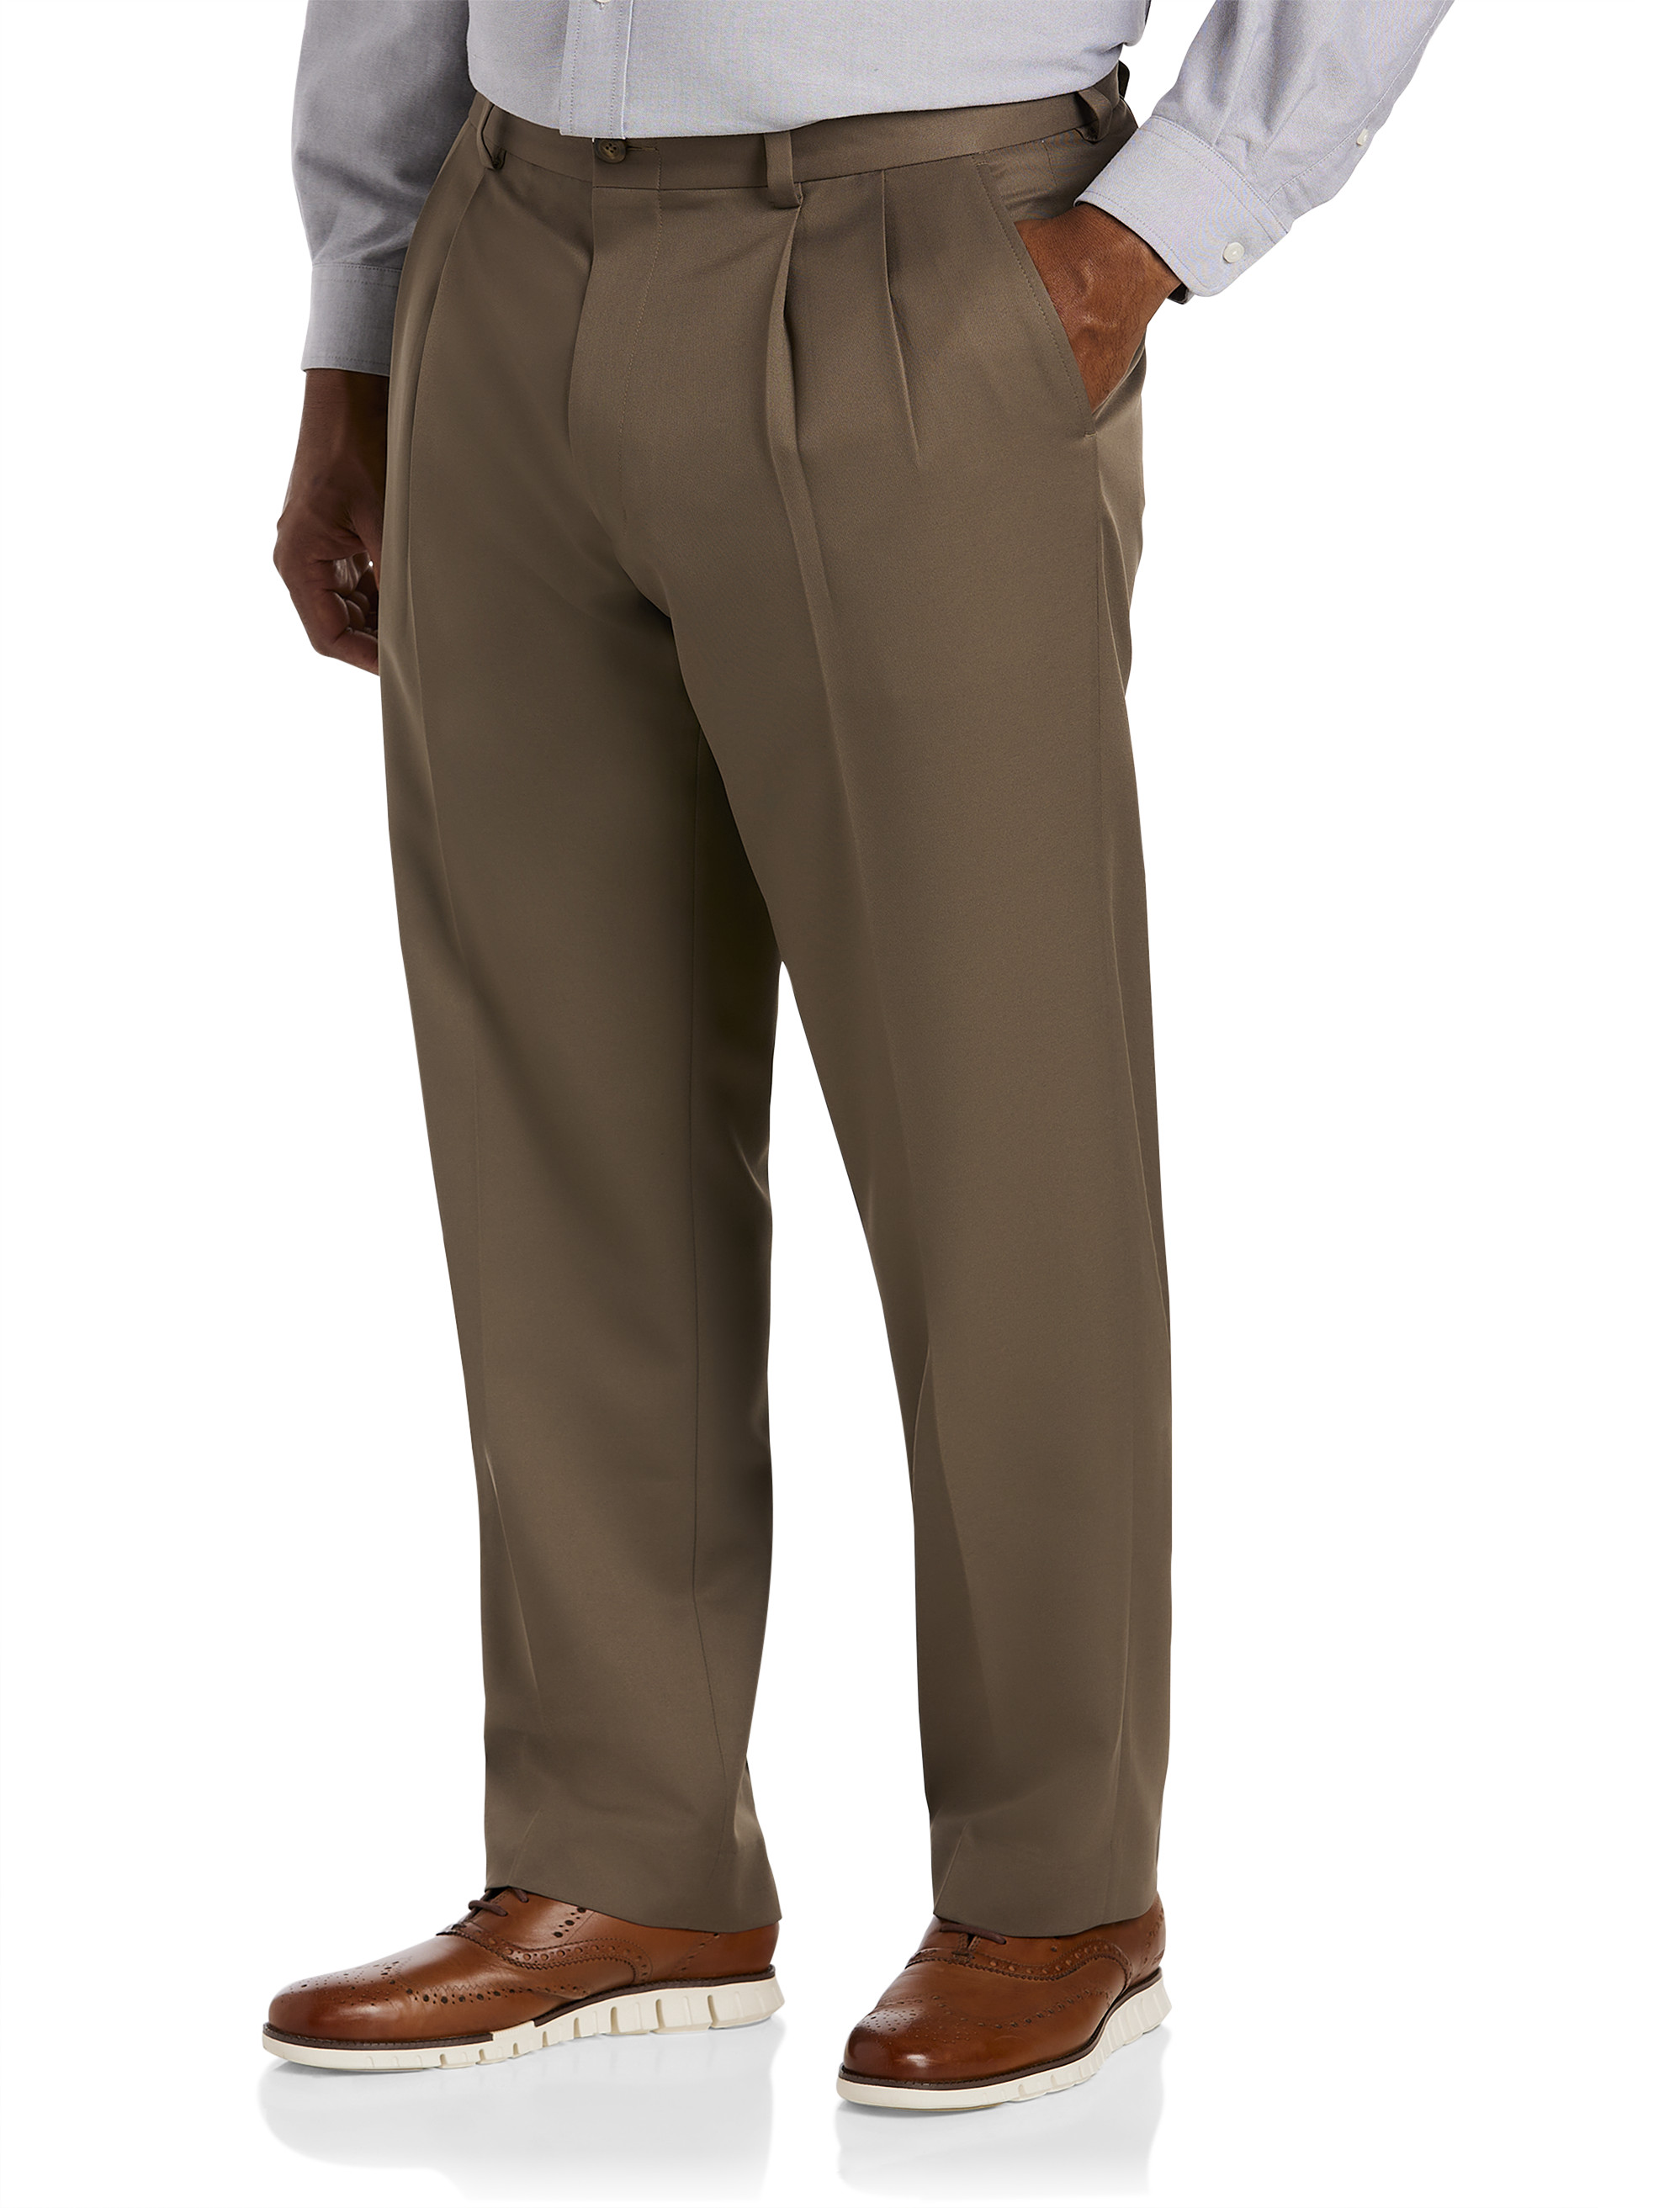 Size 44 Suit Trousers, Big Men's Suit Trousers